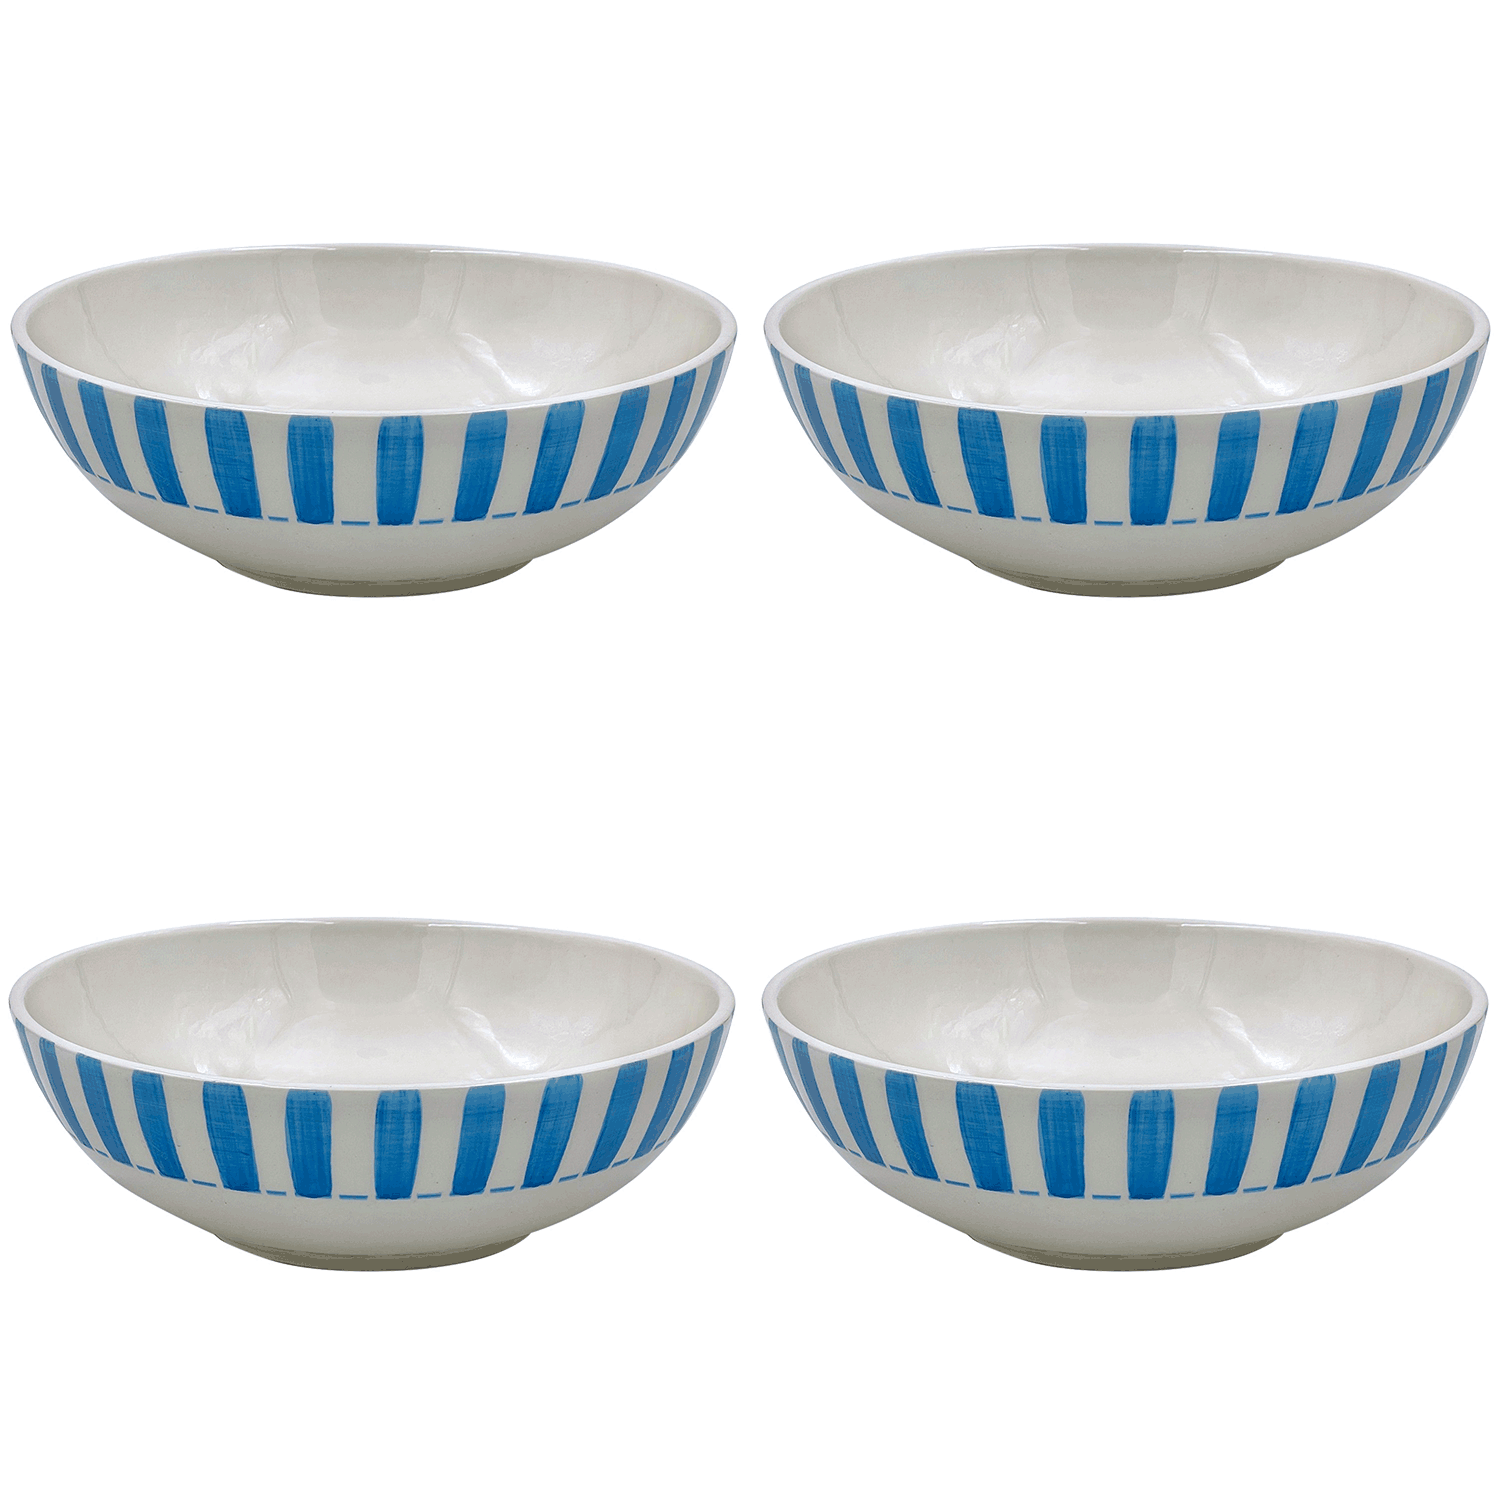 Large Light Blue Stripes Bowls (Set of 4)